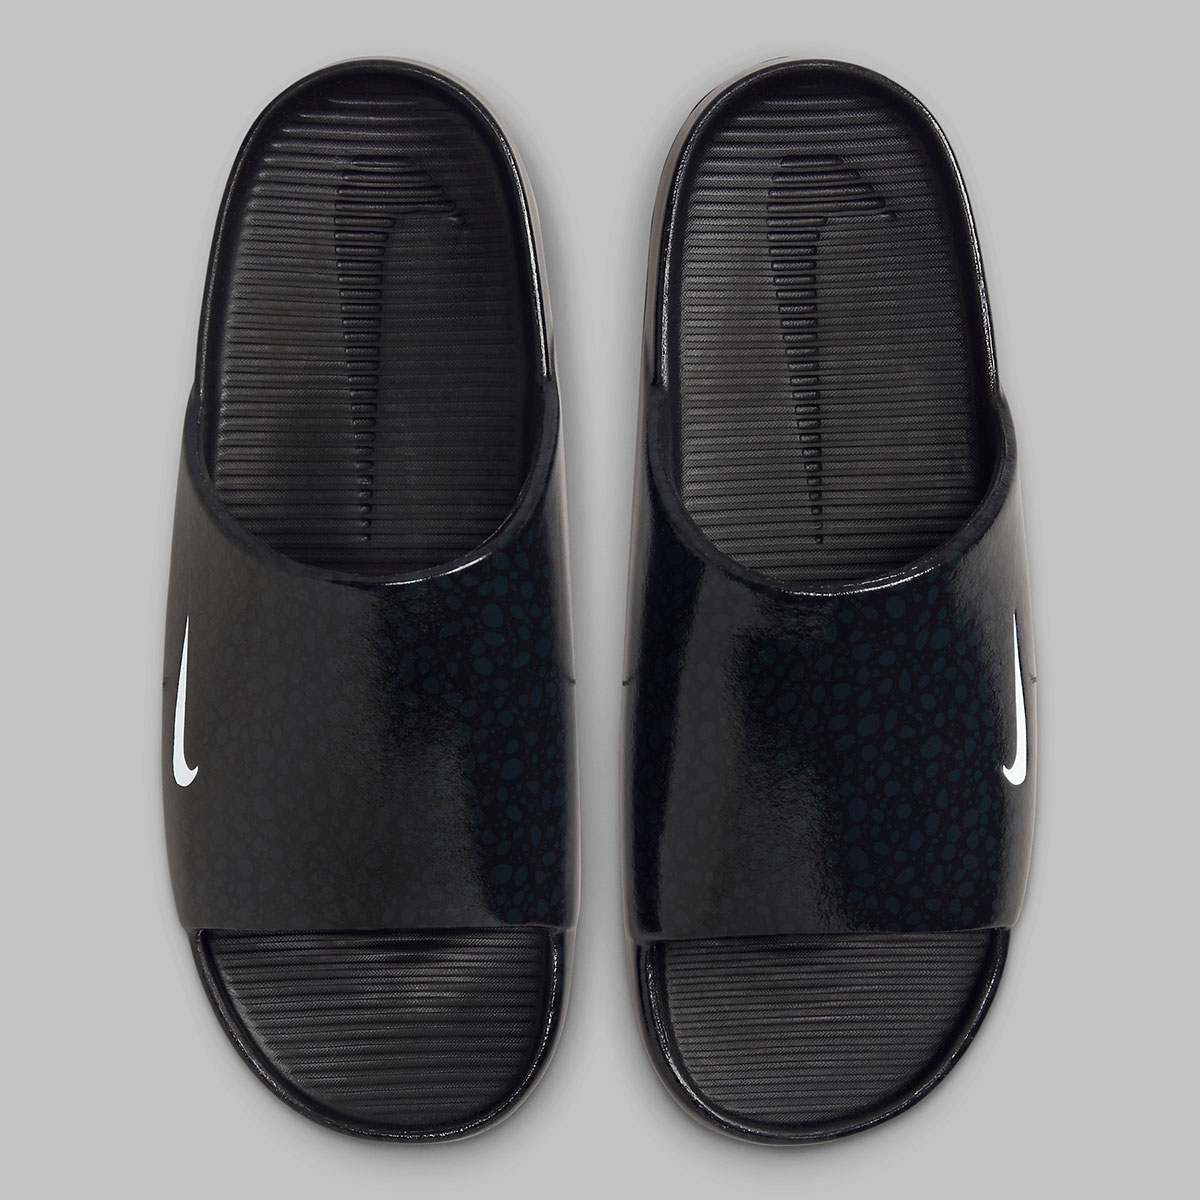 paint splatter nike shox sneakers shoes amazon Safari Black Hf1067 002 3